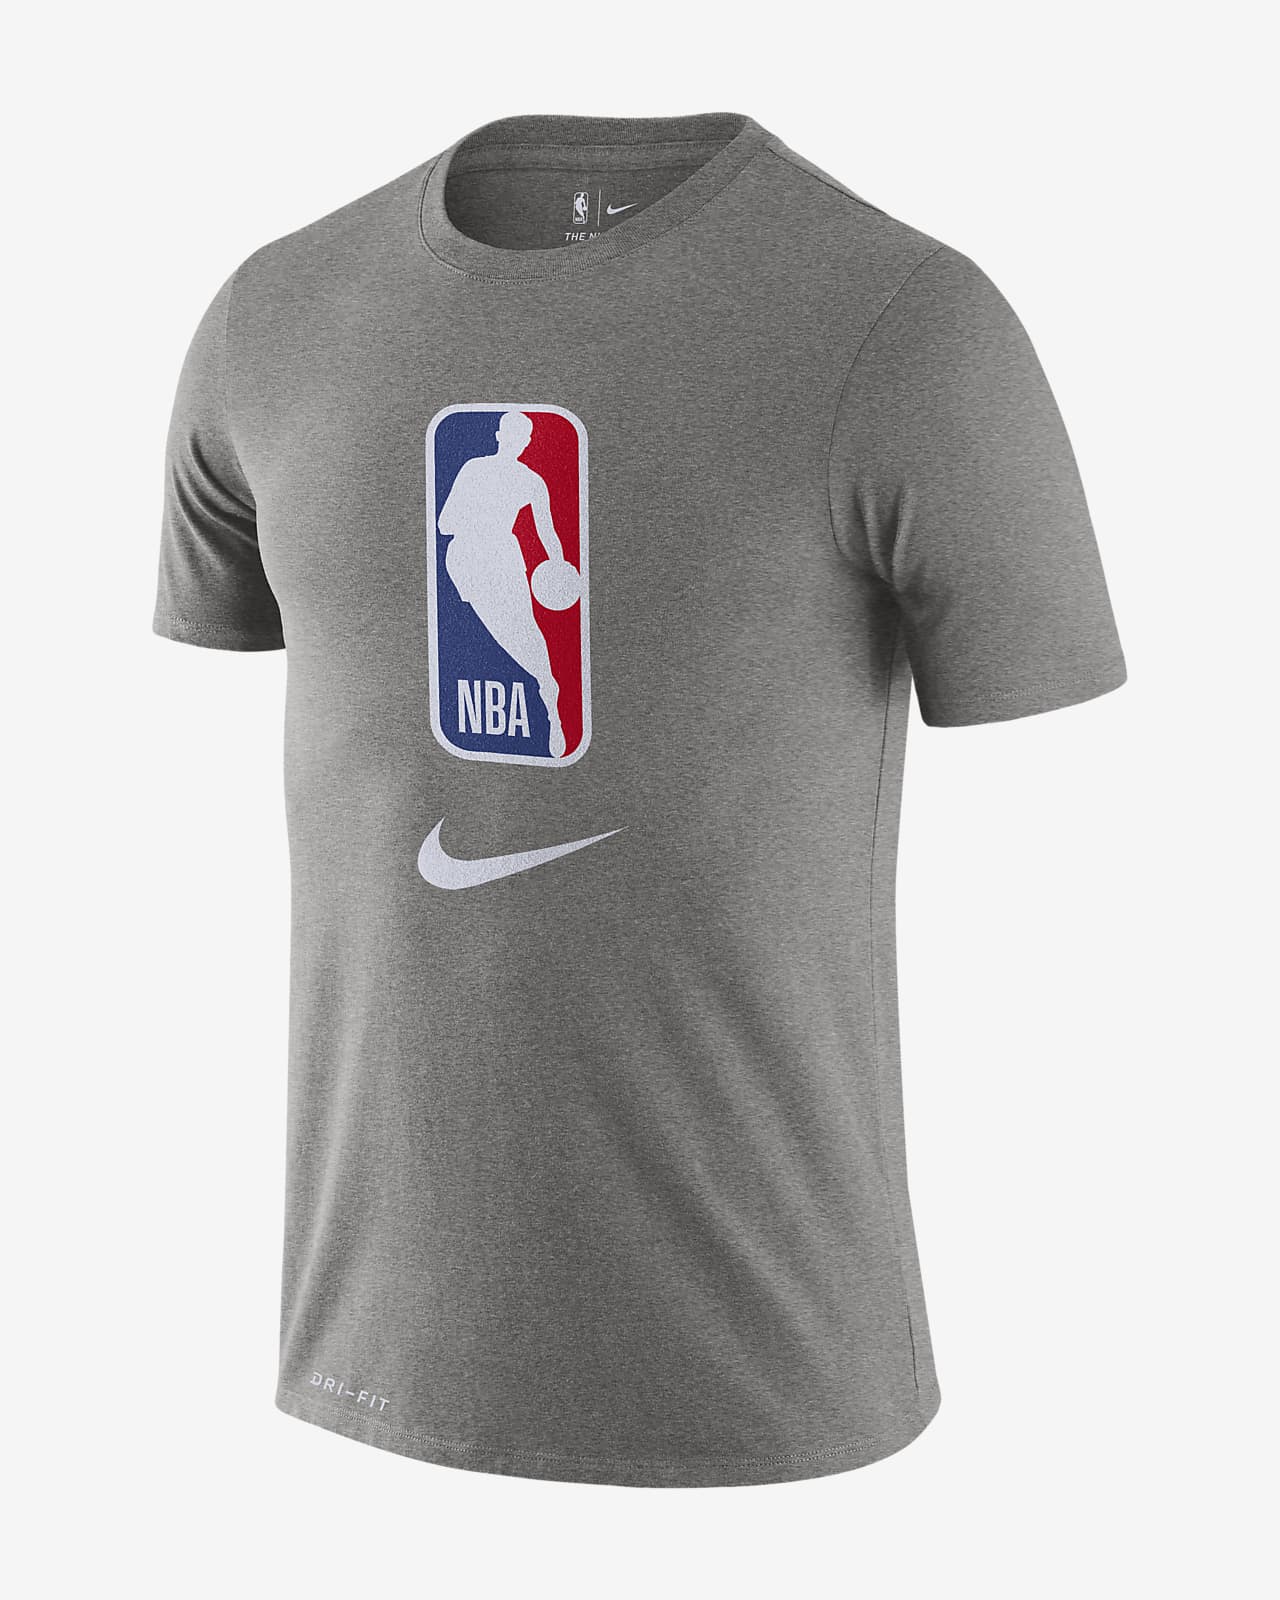 Team 31 Camiseta Nike Dri-FIT de la NBA - Hombre